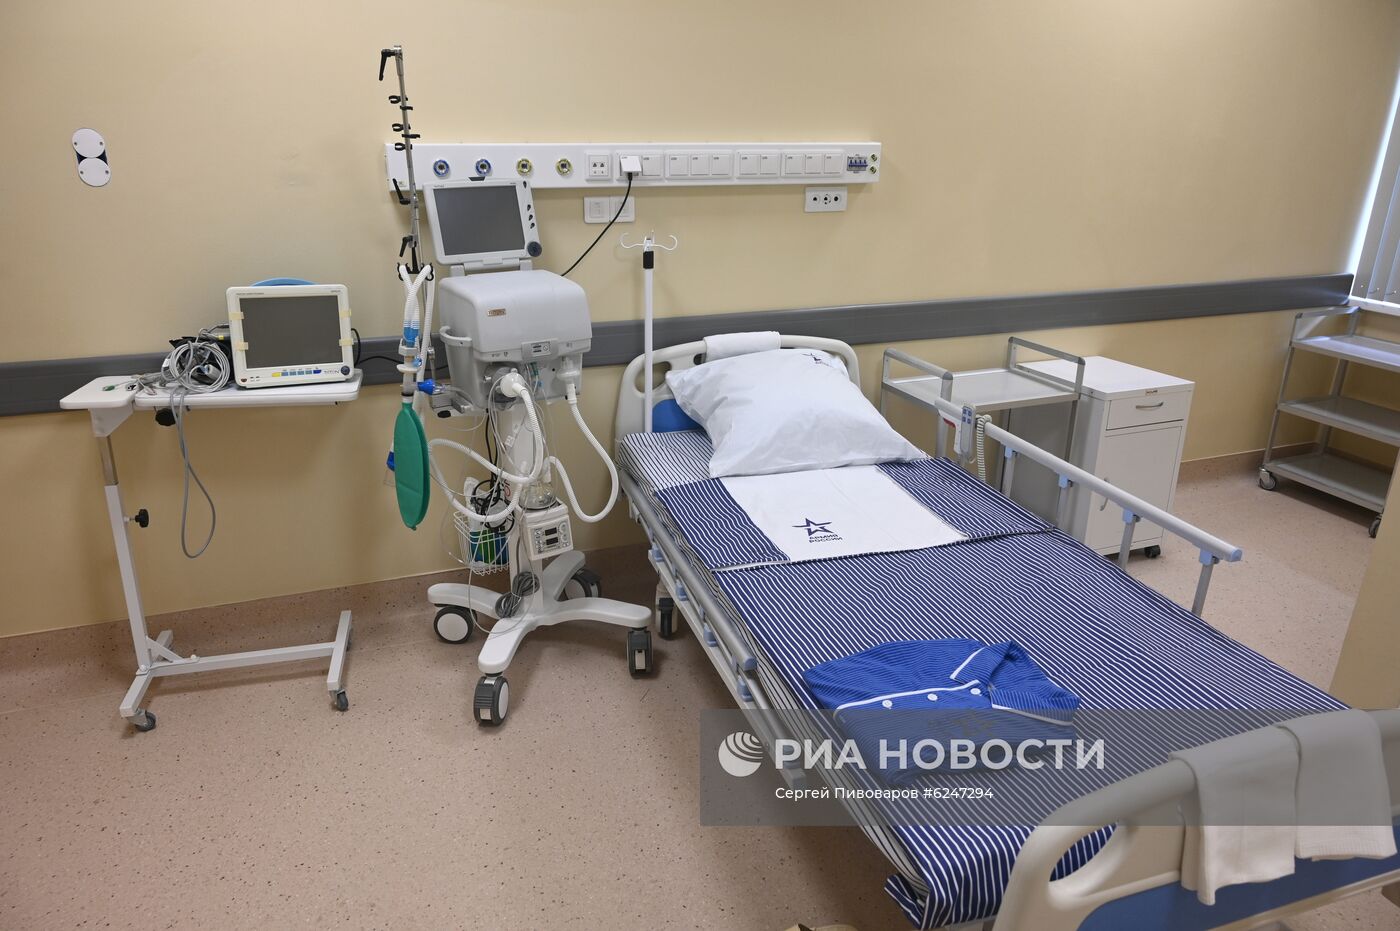 Открытие медцентра Минобороны РФ для пациентов с COVID-19 в Ростове-на-Дону 